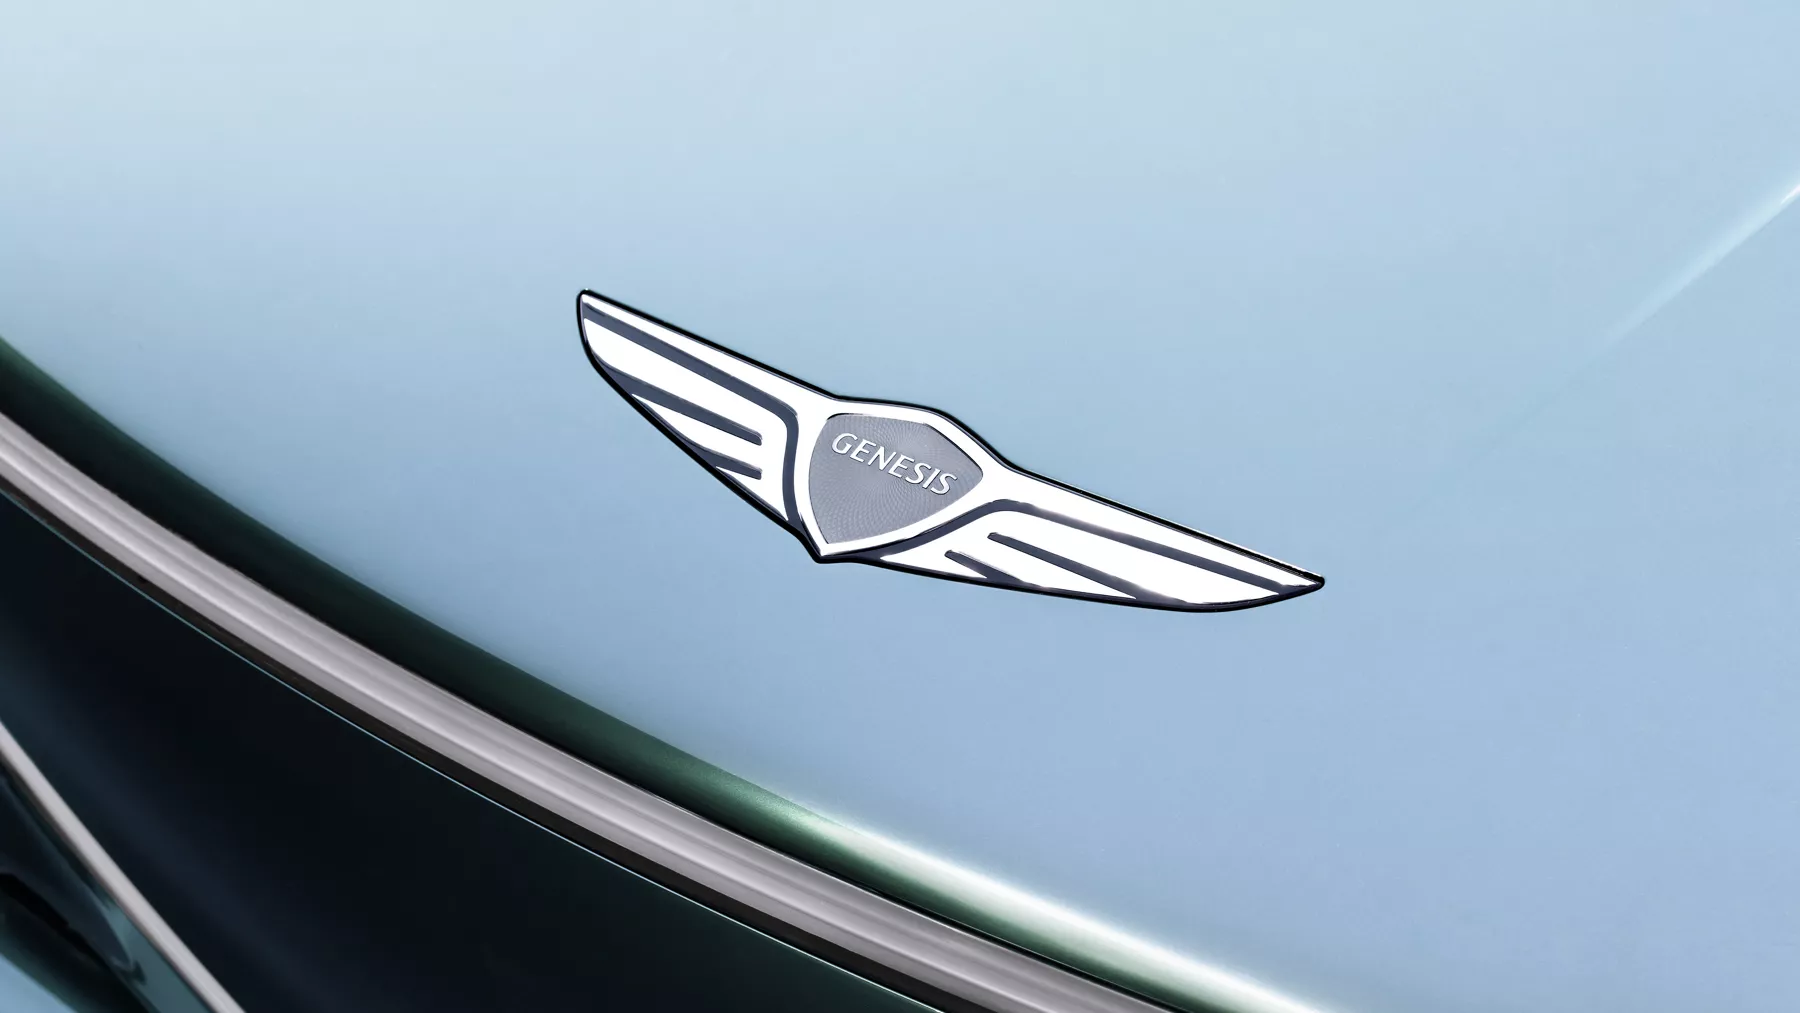 X Speedium Coupe 概念車引擎蓋上的 Genesis 標誌特寫圖。